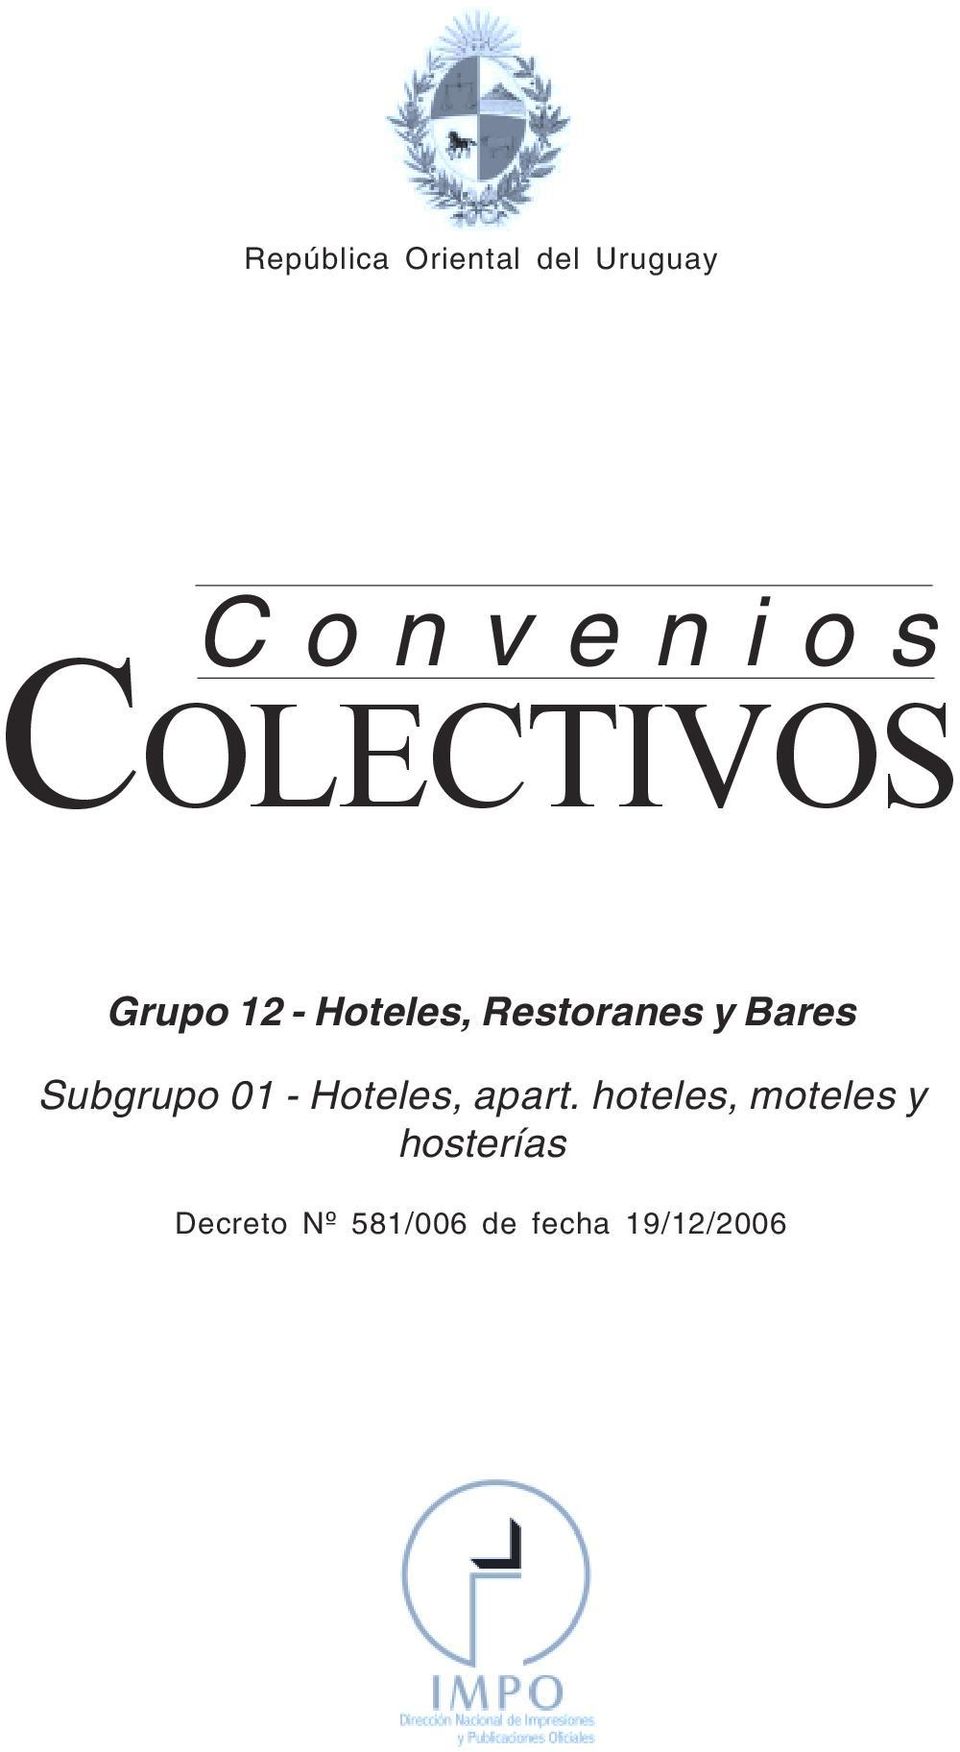 Convenios COLECTIVOS Grupo 12 - Hoteles, Restoranes y Bares